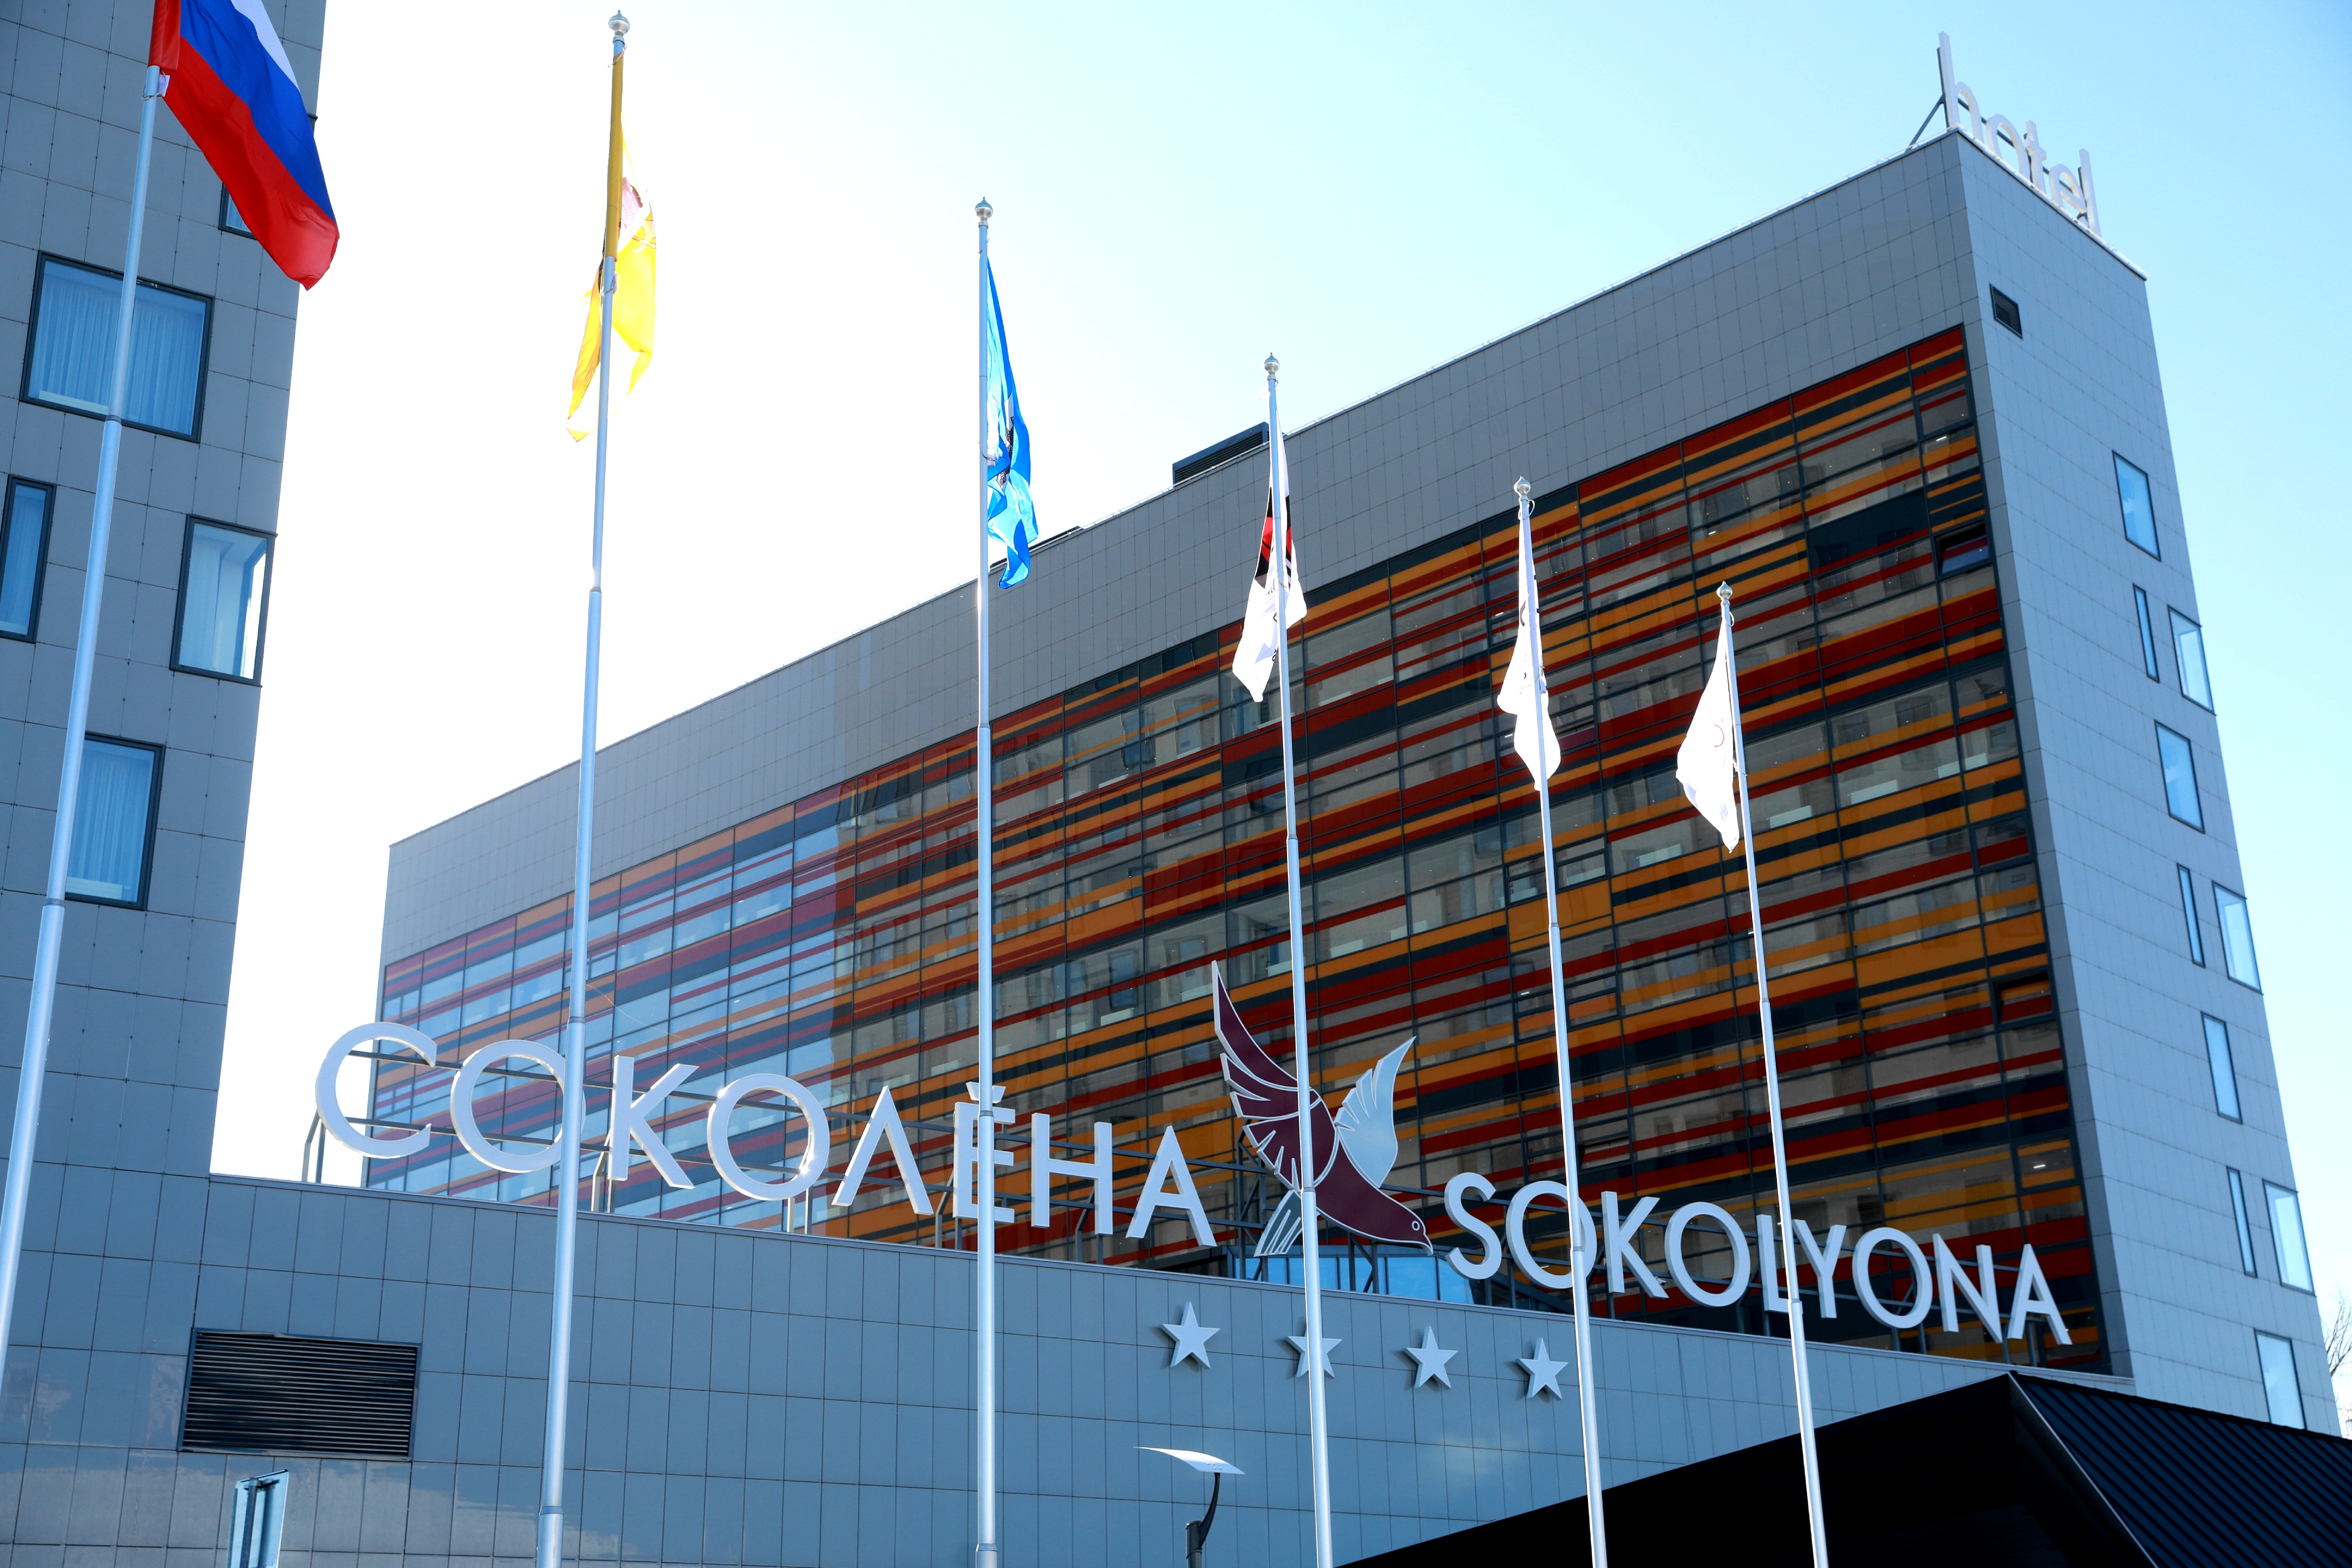 В Ярославле состоялось открытие новой четырехзвездочной гостиницы «Соколена»